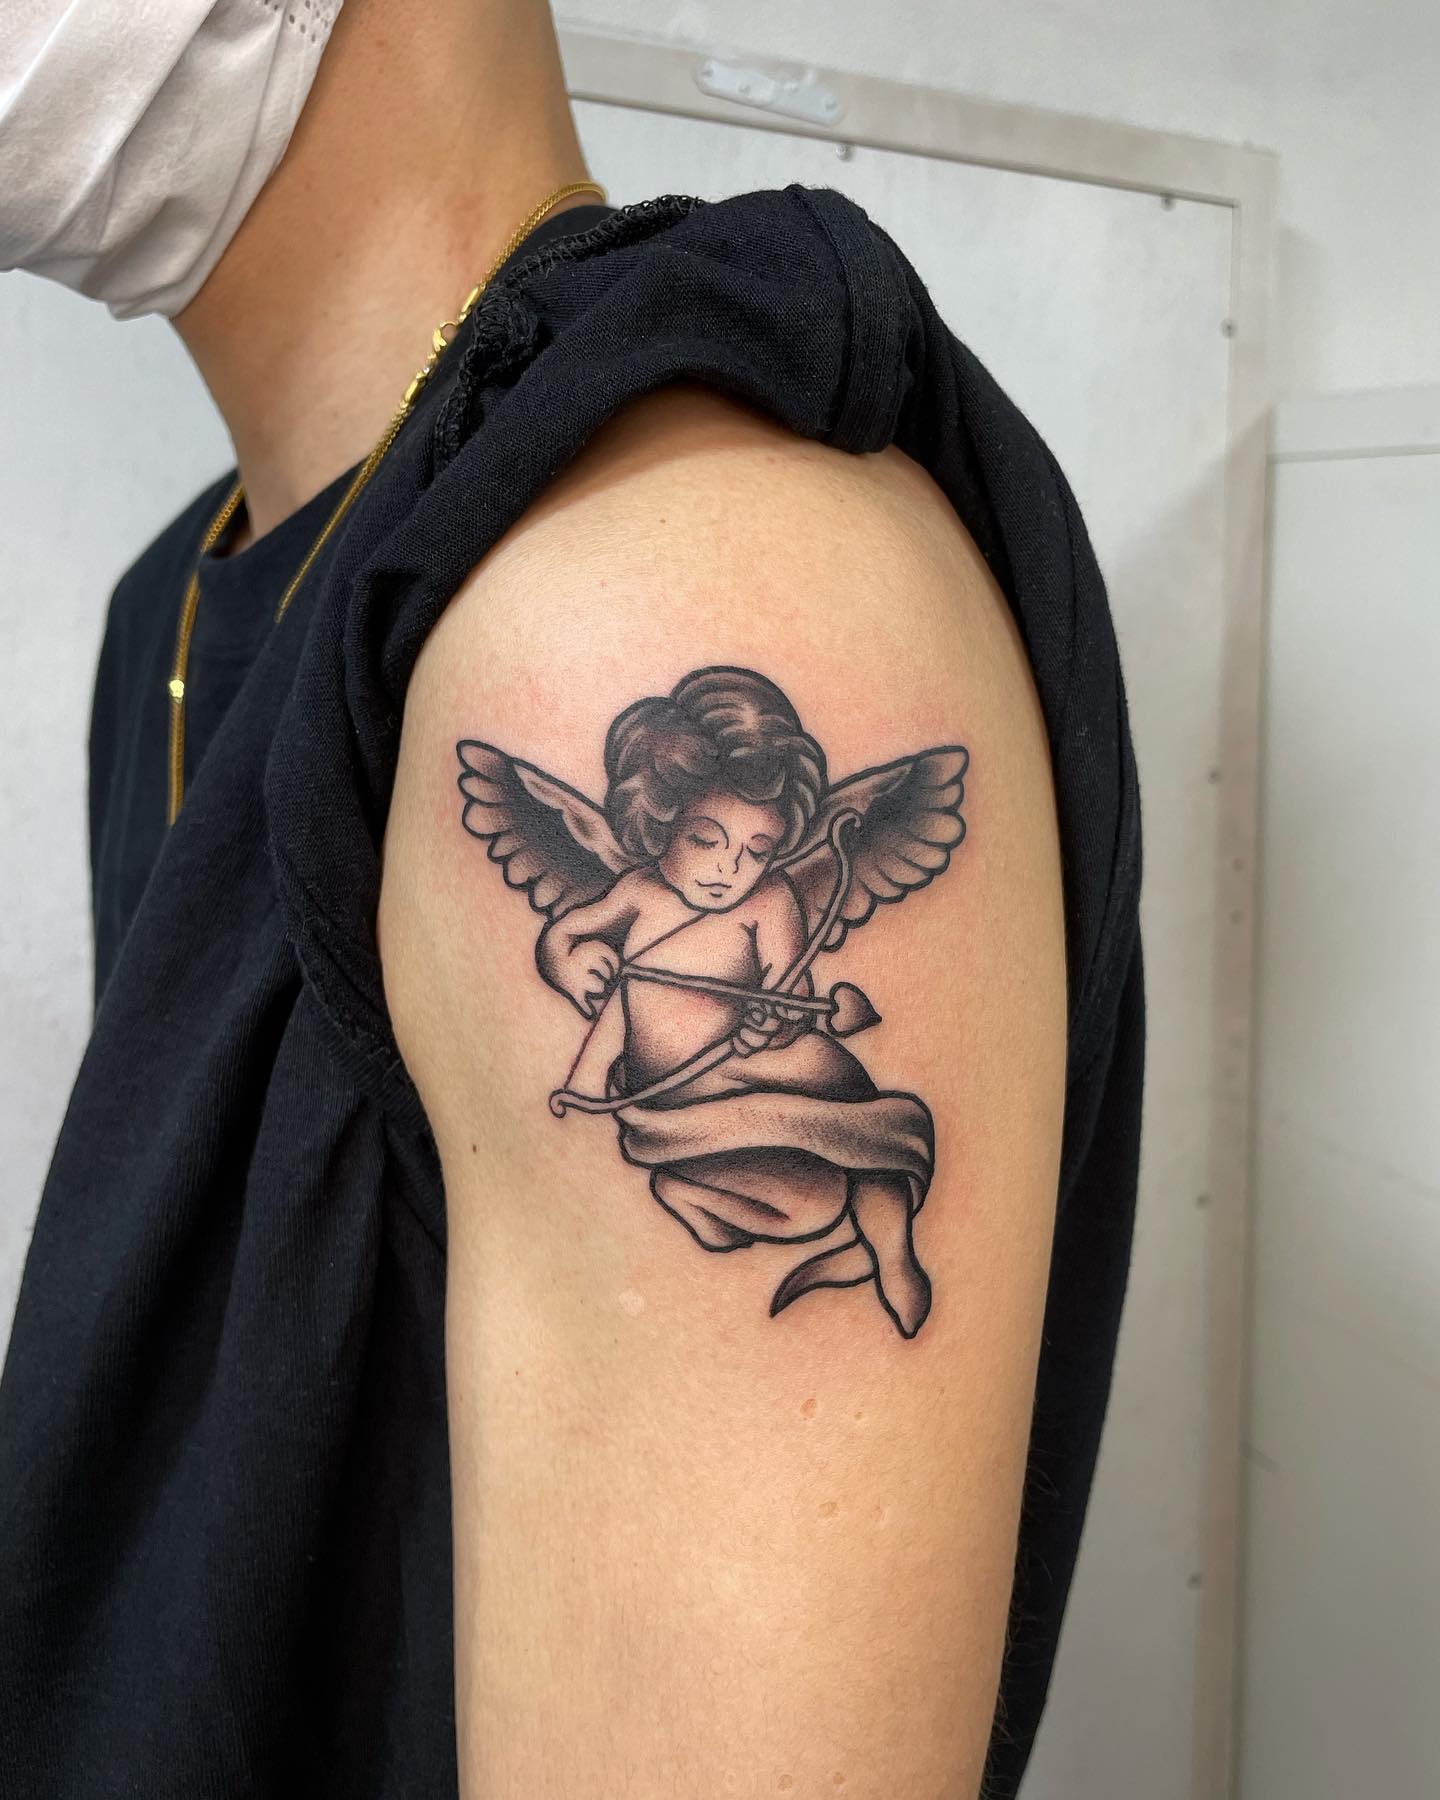 Diseño de tatuaje de hombro de pequeño ángel.